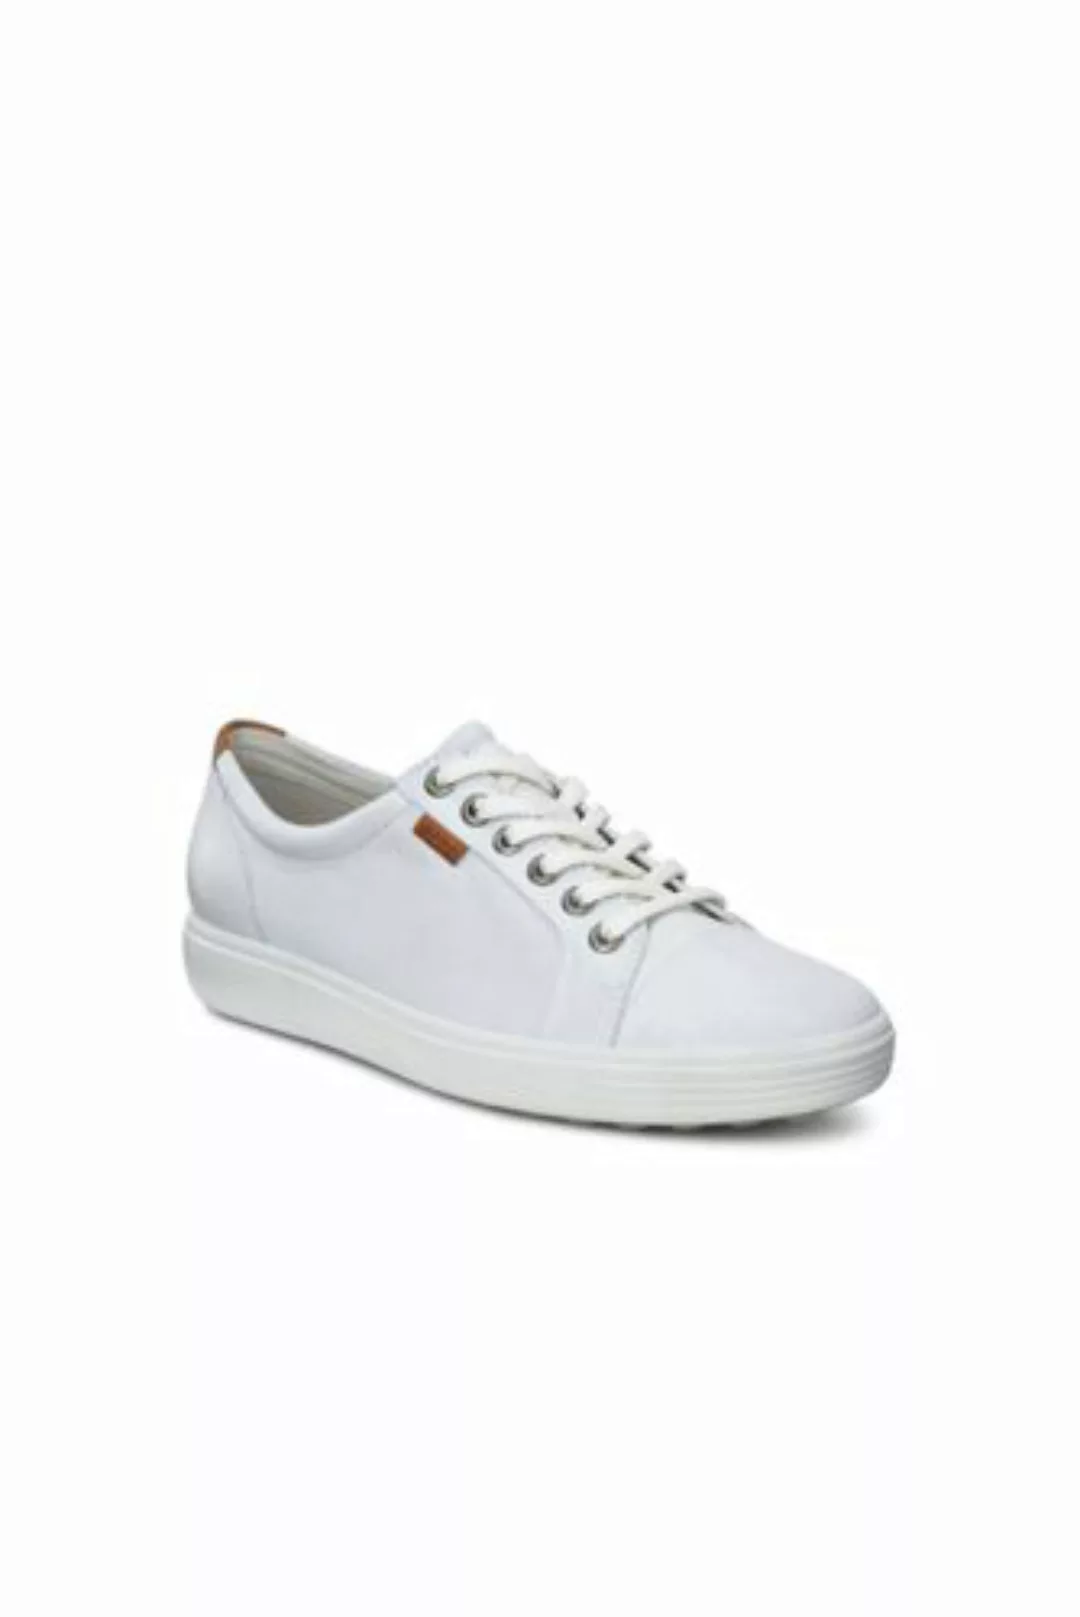 ECCO Sneaker SOFT 7, Damen, Größe: 36 Normal, Weiß, Leder, by Lands' End, W günstig online kaufen